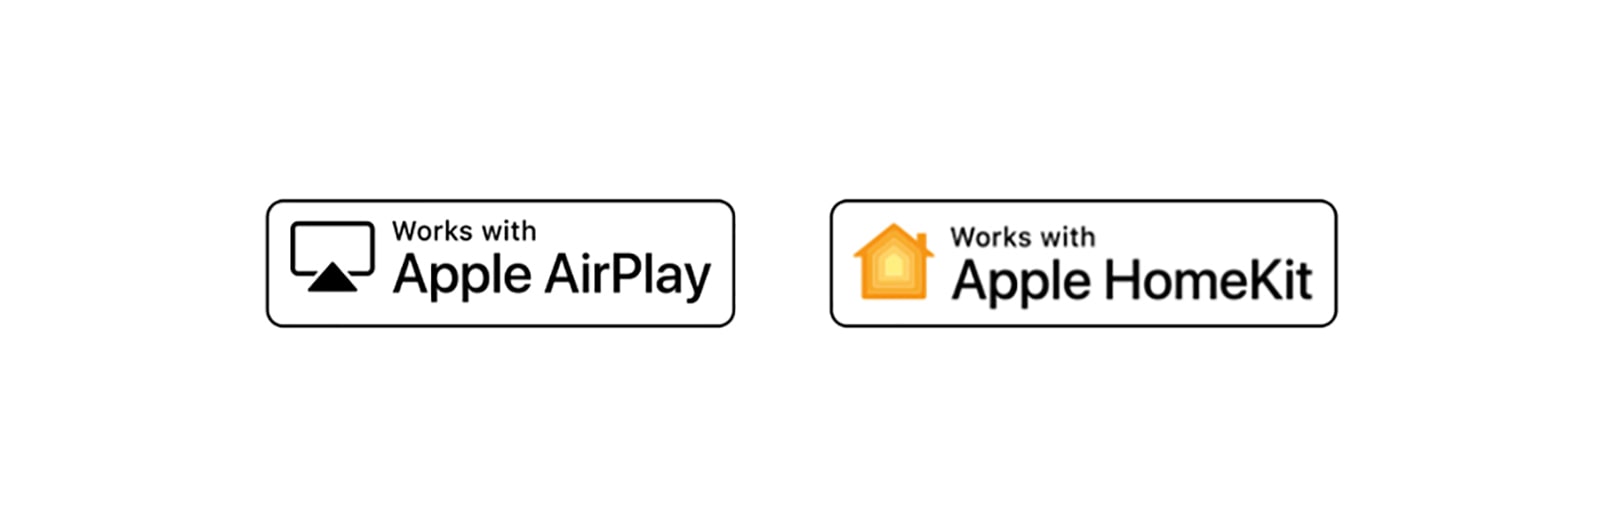 Detaylar arasında ThinQ AI'nin uyumlu olduğu Apple Airplay ve Apple HomeKit logoları da yer alıyor.